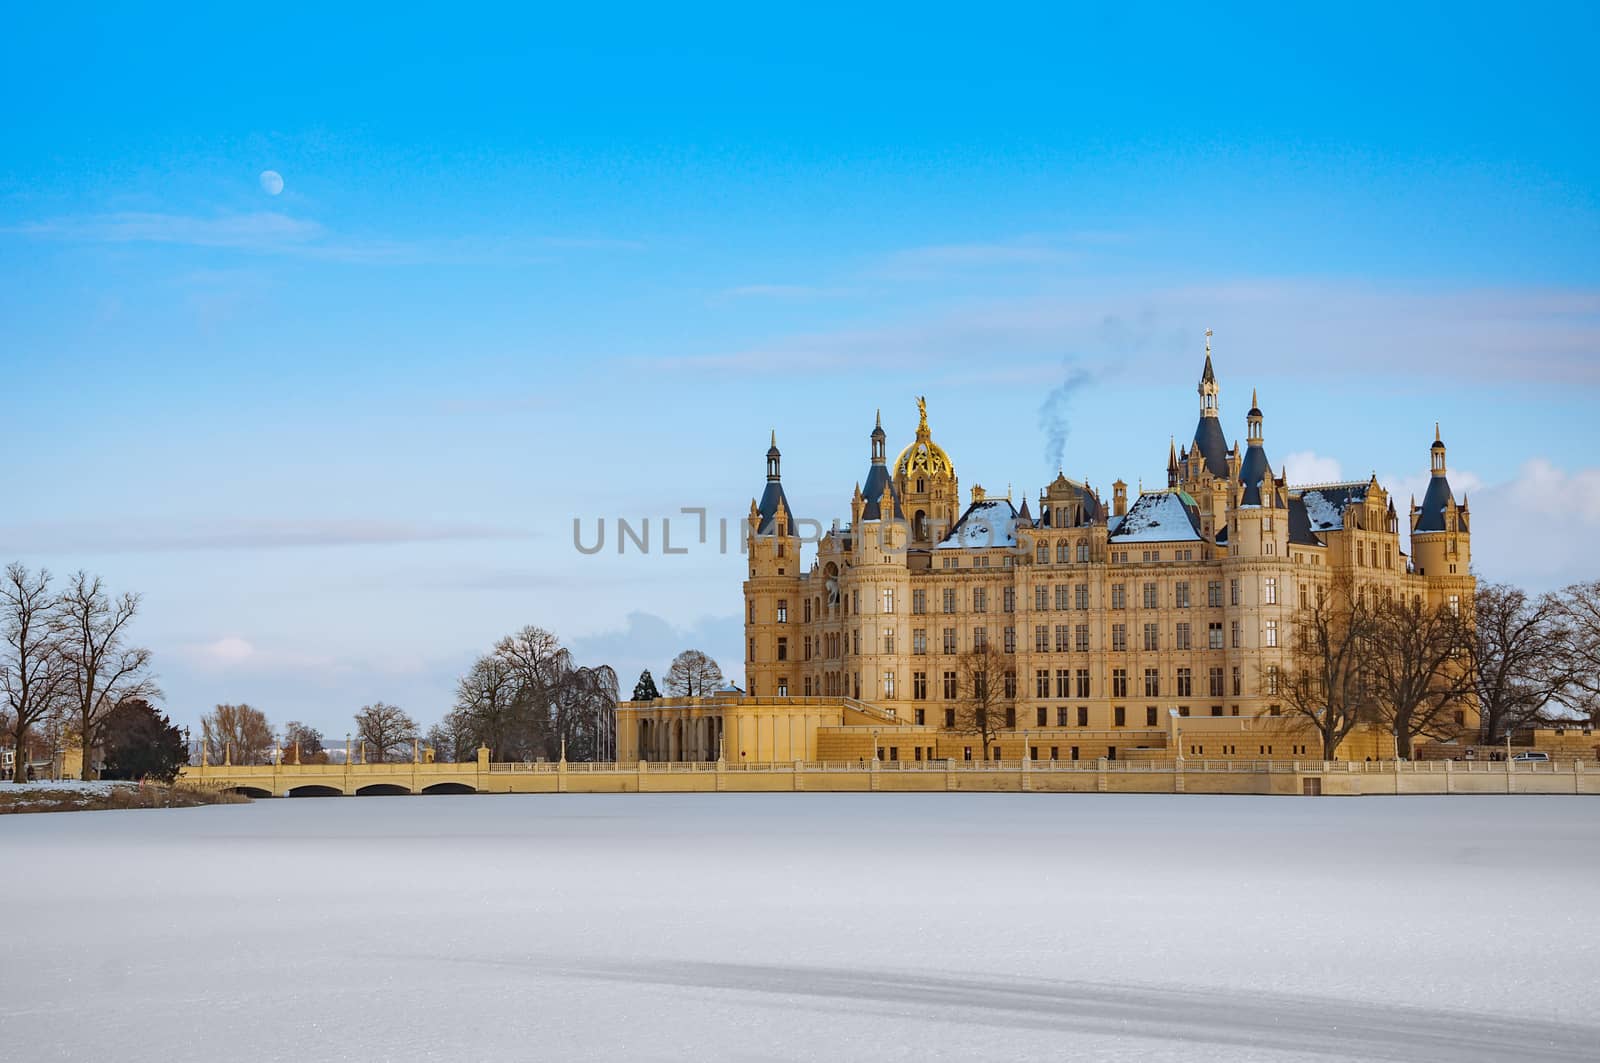 The beautiful, fairy-tale Castle of Schwerin in winter times by Fischeron